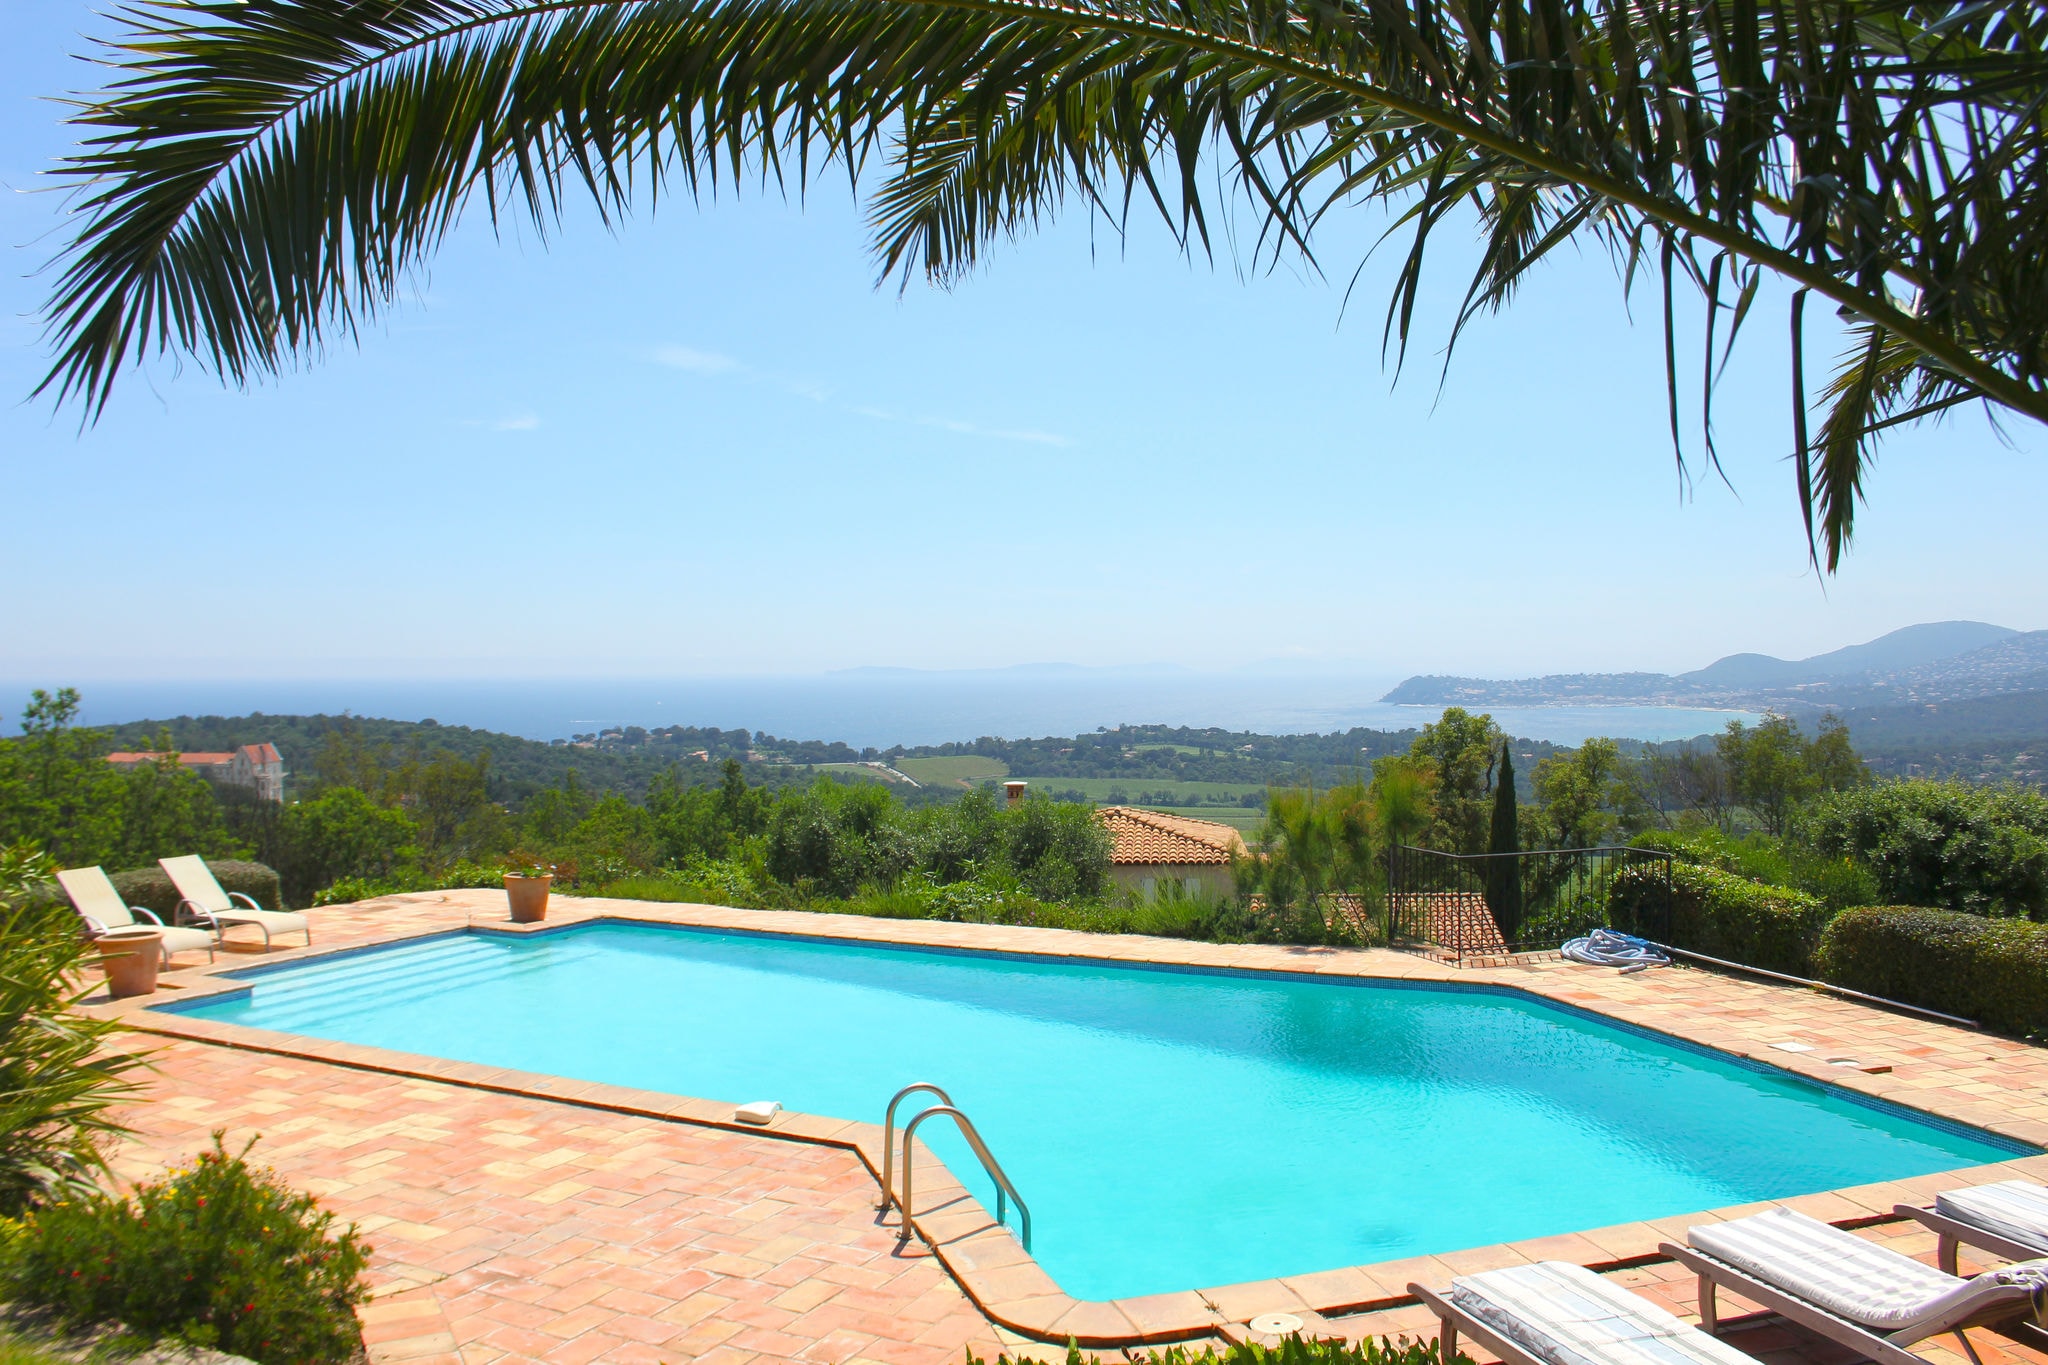 Vrijstaande vakantievilla in Zuid-Frankrijk met privézwembad